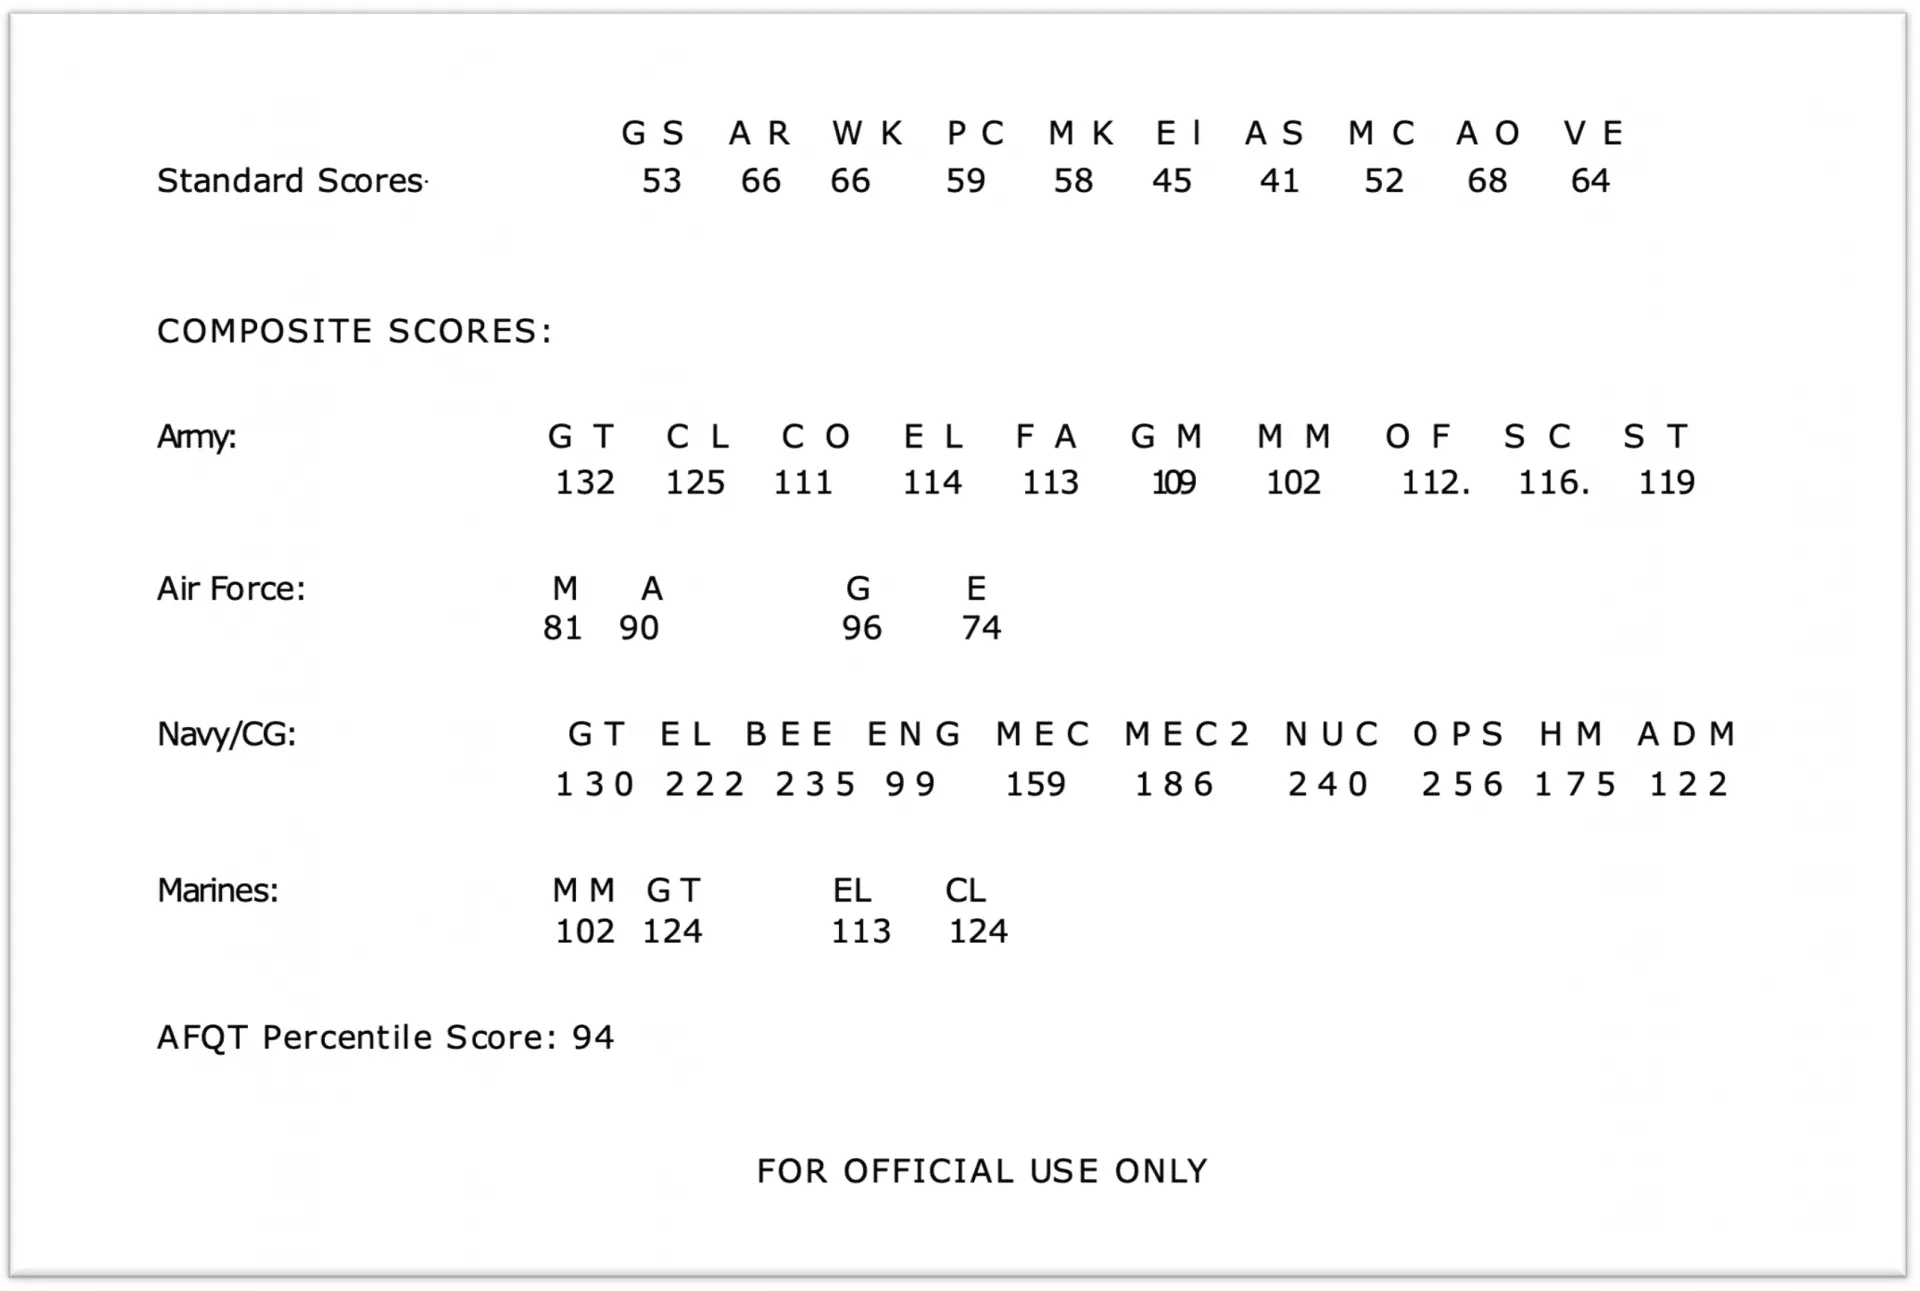 PiCAT Test scores